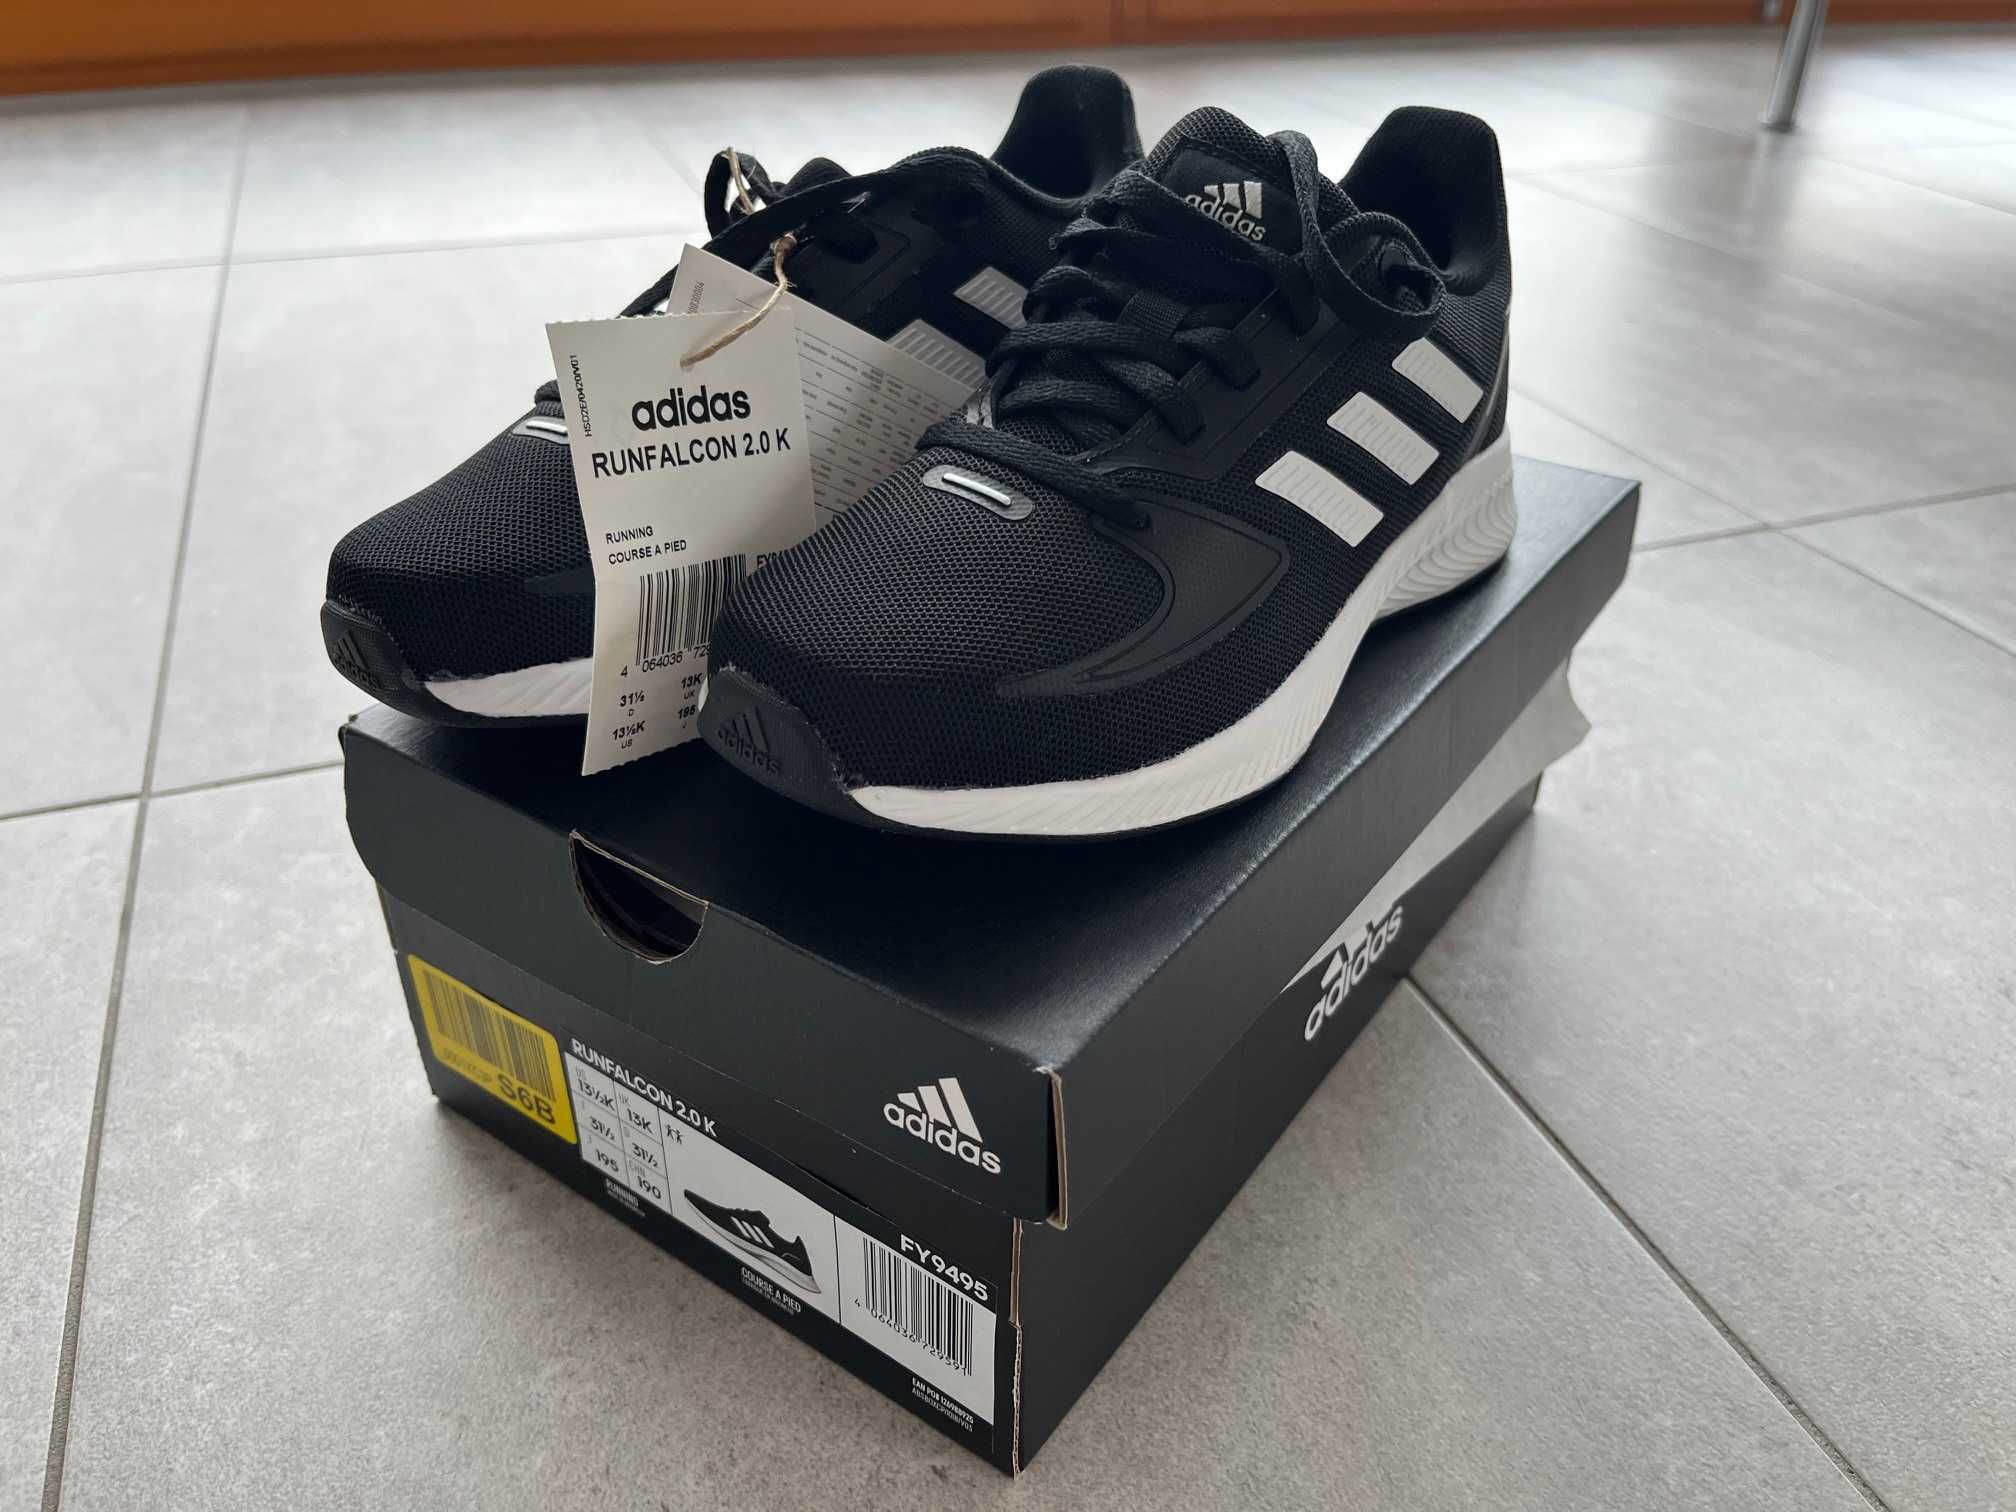 Buty dla dzieci Adidas Runfalcon 2.0 - rozmiar 31,5 - NOWE